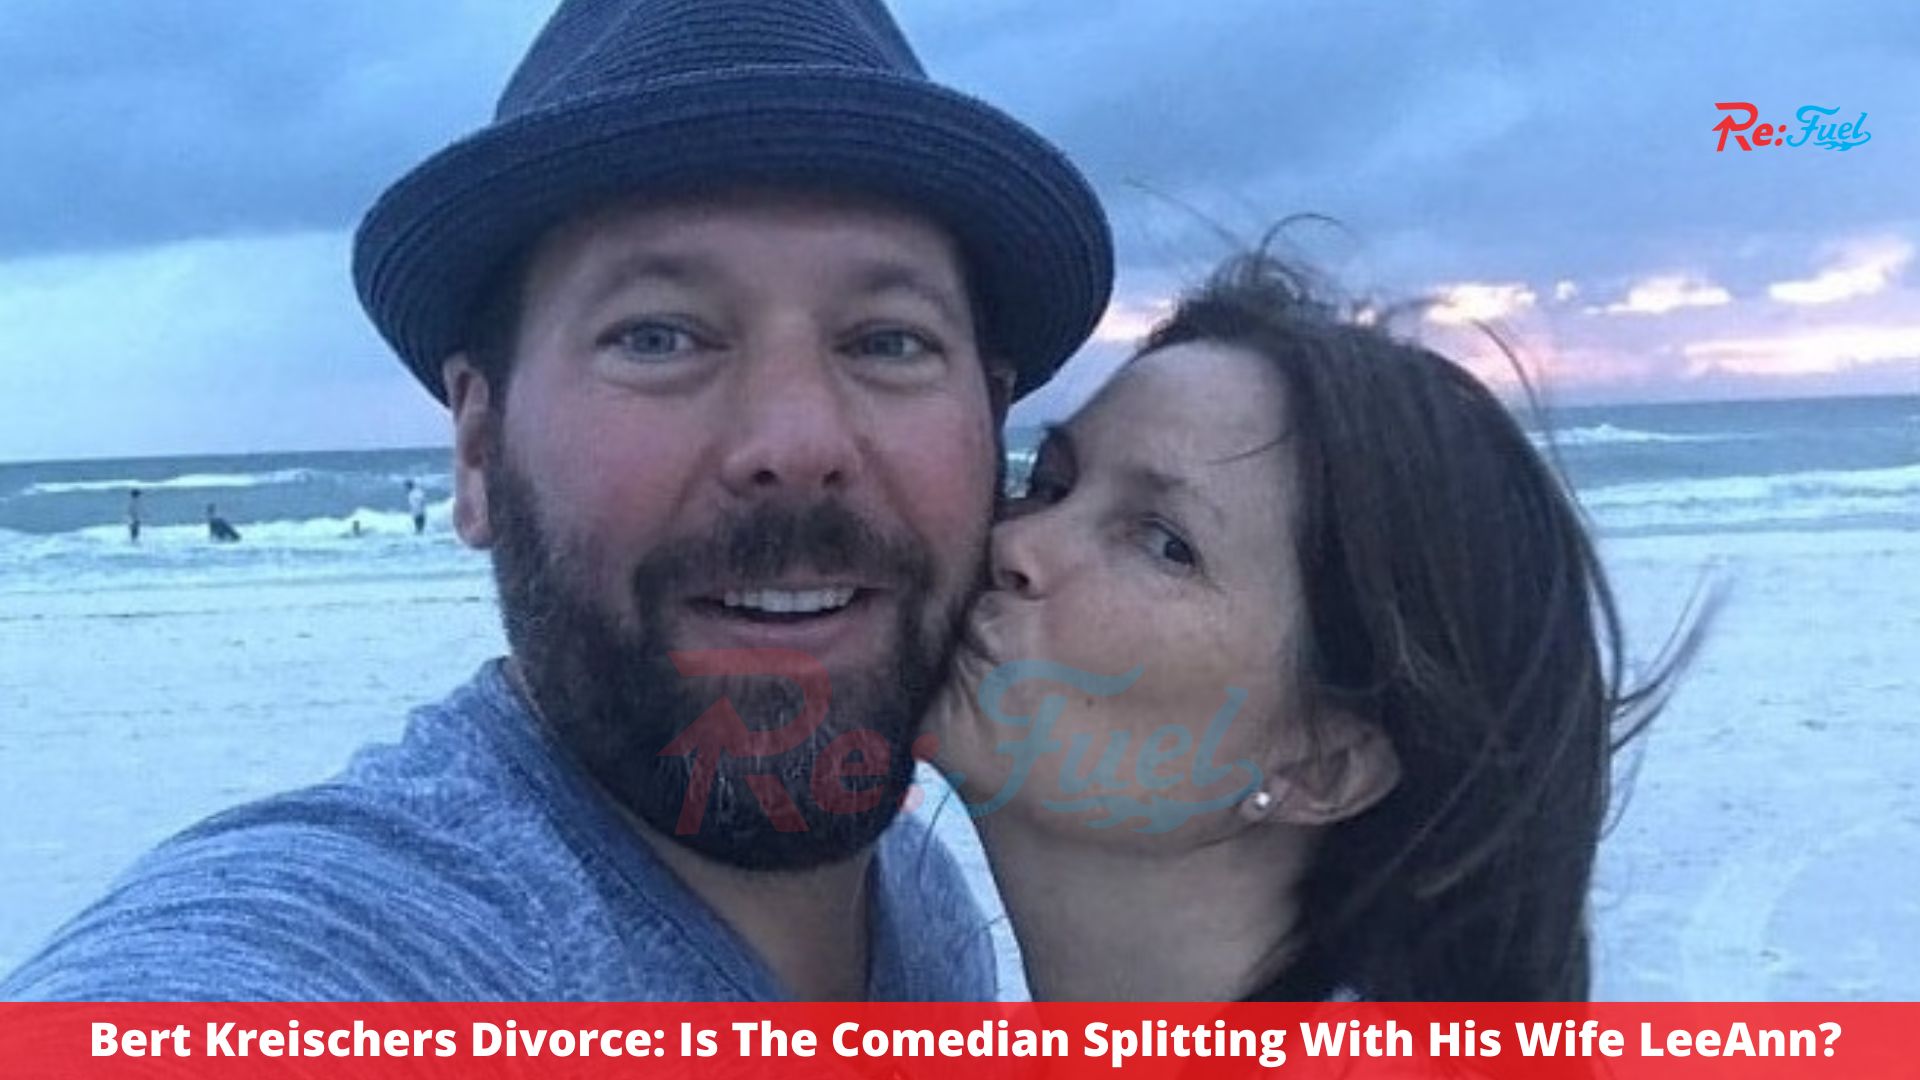 Bert Kreischers Divorce: Is The Comedian Splitting With His Wife LeeAnn?